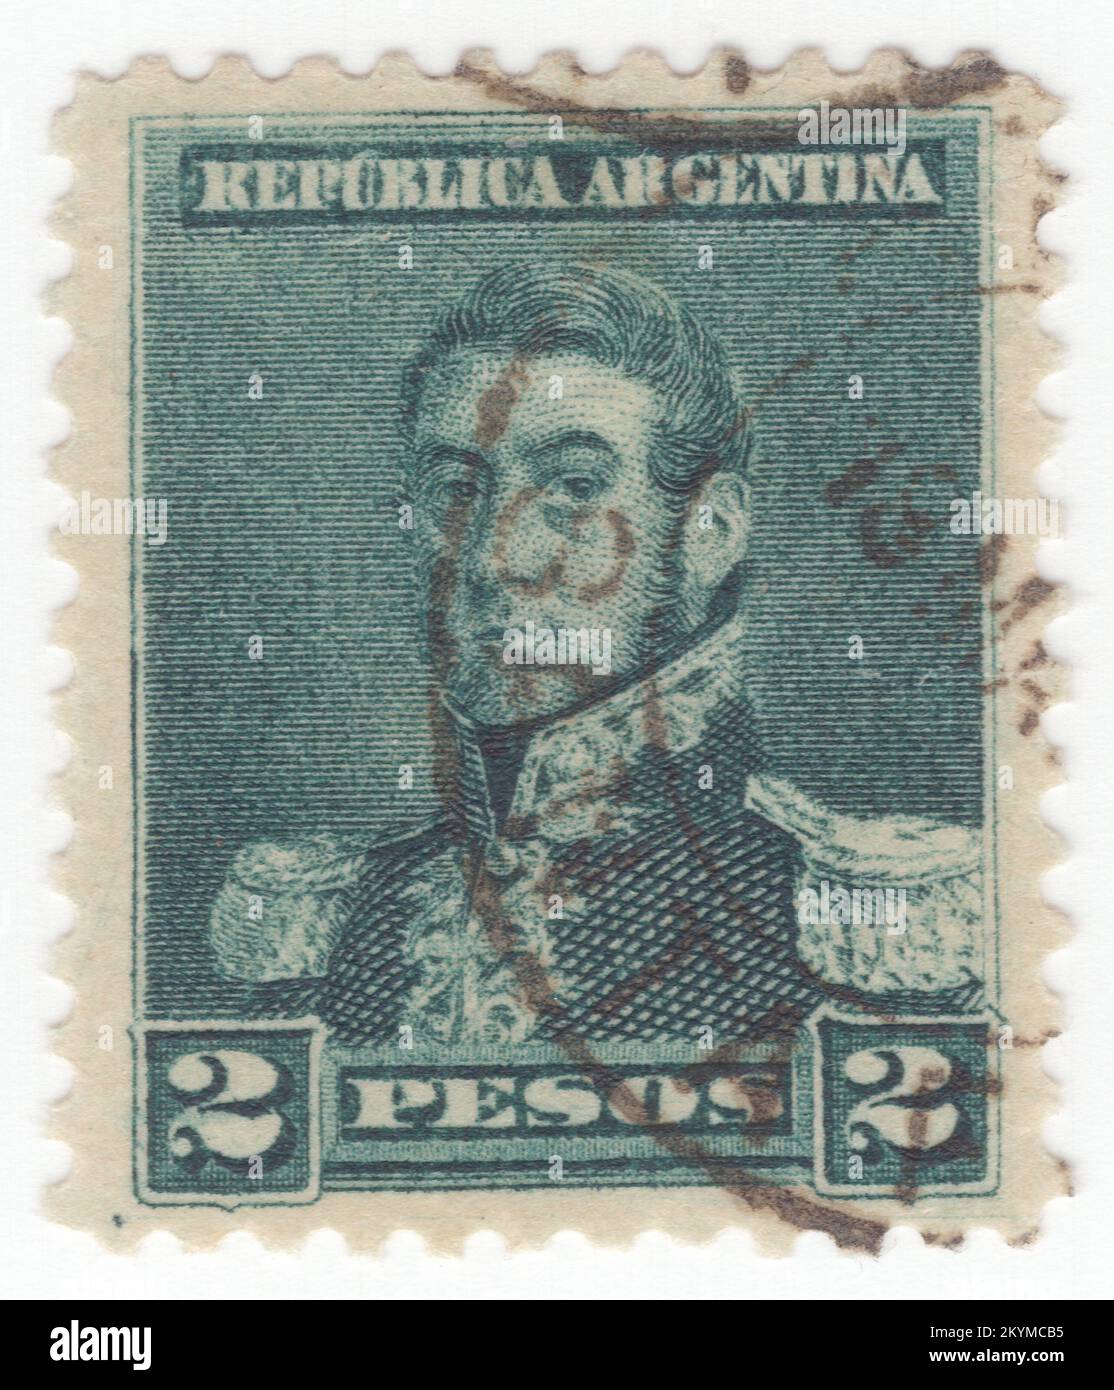 ARGENTINIEN - 1892: Dunkelgrüne Briefmarke von 2 Pesos, die das Porträt von José de San Martín (Jose Francisco de San Martín y Matorras) darstellt, bekannt als der Liberator von Argentinien, Chile und Peru. Argentinischer General und der Hauptführer des südlichen und zentralen Teils des erfolgreichen Kampfes Südamerikas für die Unabhängigkeit vom Spanischen Reich, der als Beschützer von Peru diente. Geboren in Yapeyú, Corrientes, im modernen Argentinien, verließ er im frühen Alter von sieben Jahren das Vizekanzler der Río de la Plata, um in Málaga, Spanien, zu studieren Stockfoto